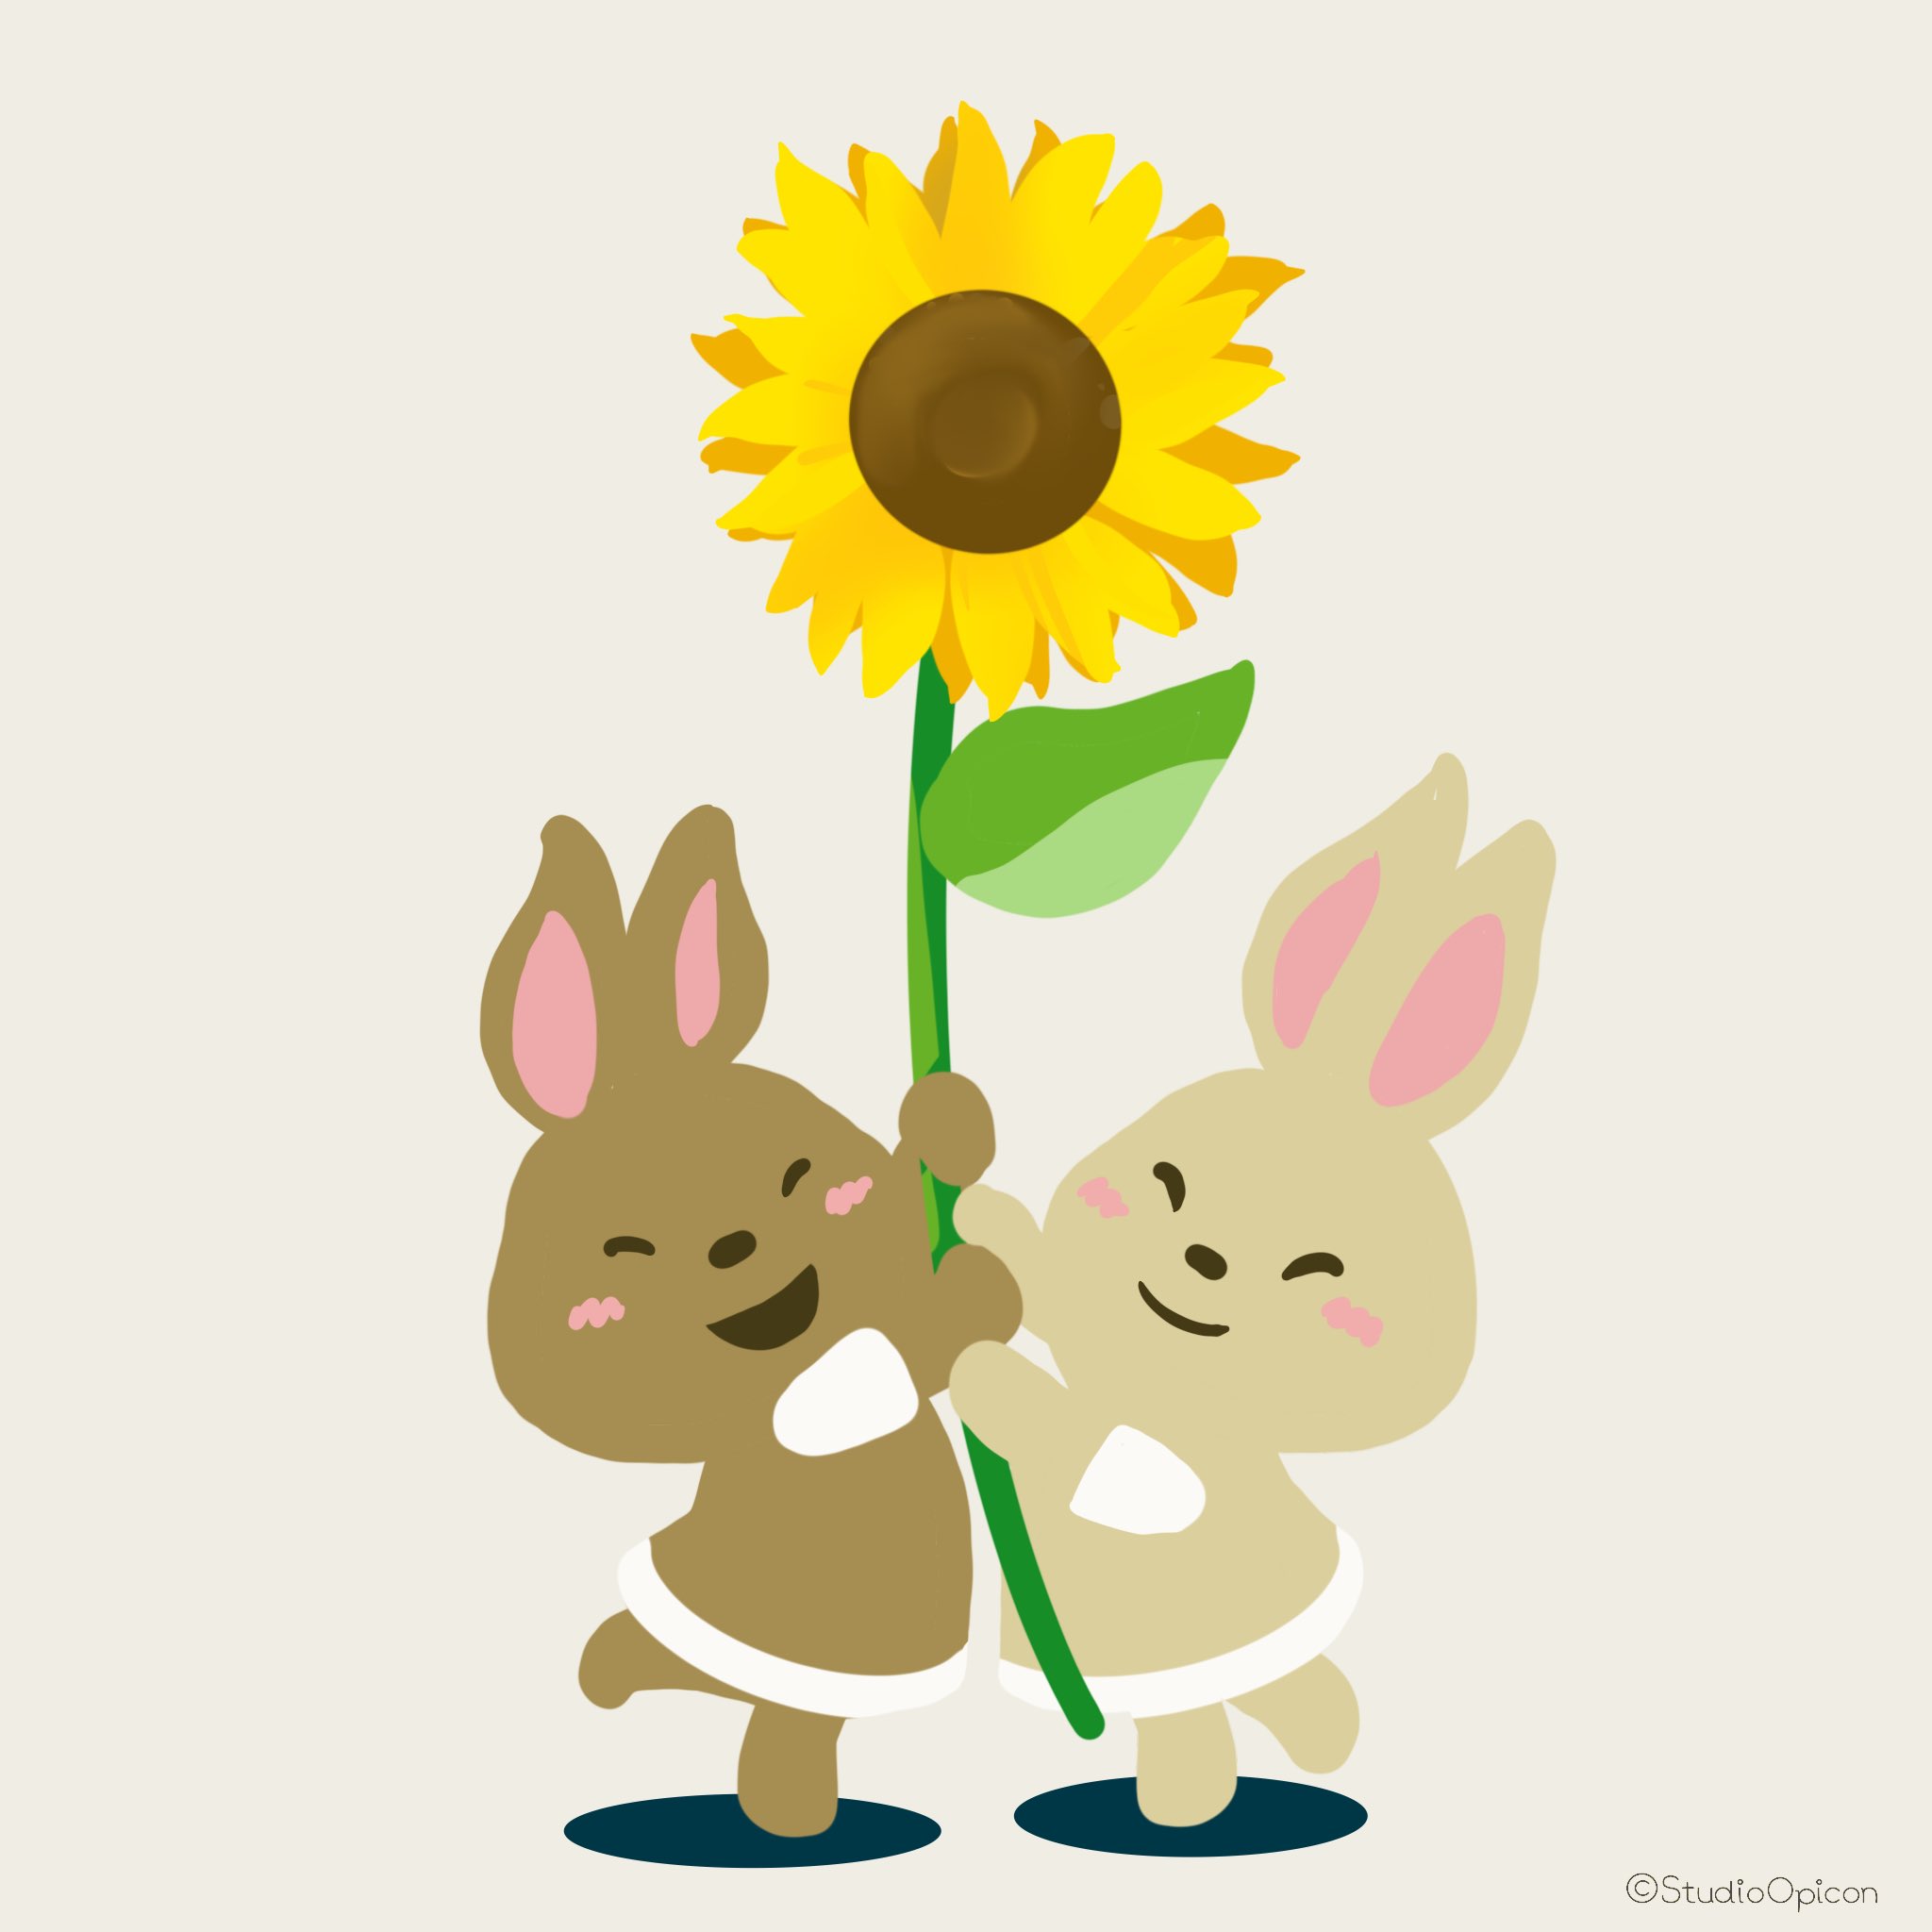 Studioopicon 2人のあいだにヒマワリ イラスト 絵 キャラクター ヒマワリ ひまわり 夏 ウサギ 動物イラスト 和み系キャラ ゆるいイラスト Illustration Drawing Character Sunflower Summer Rabbit Animalillustration